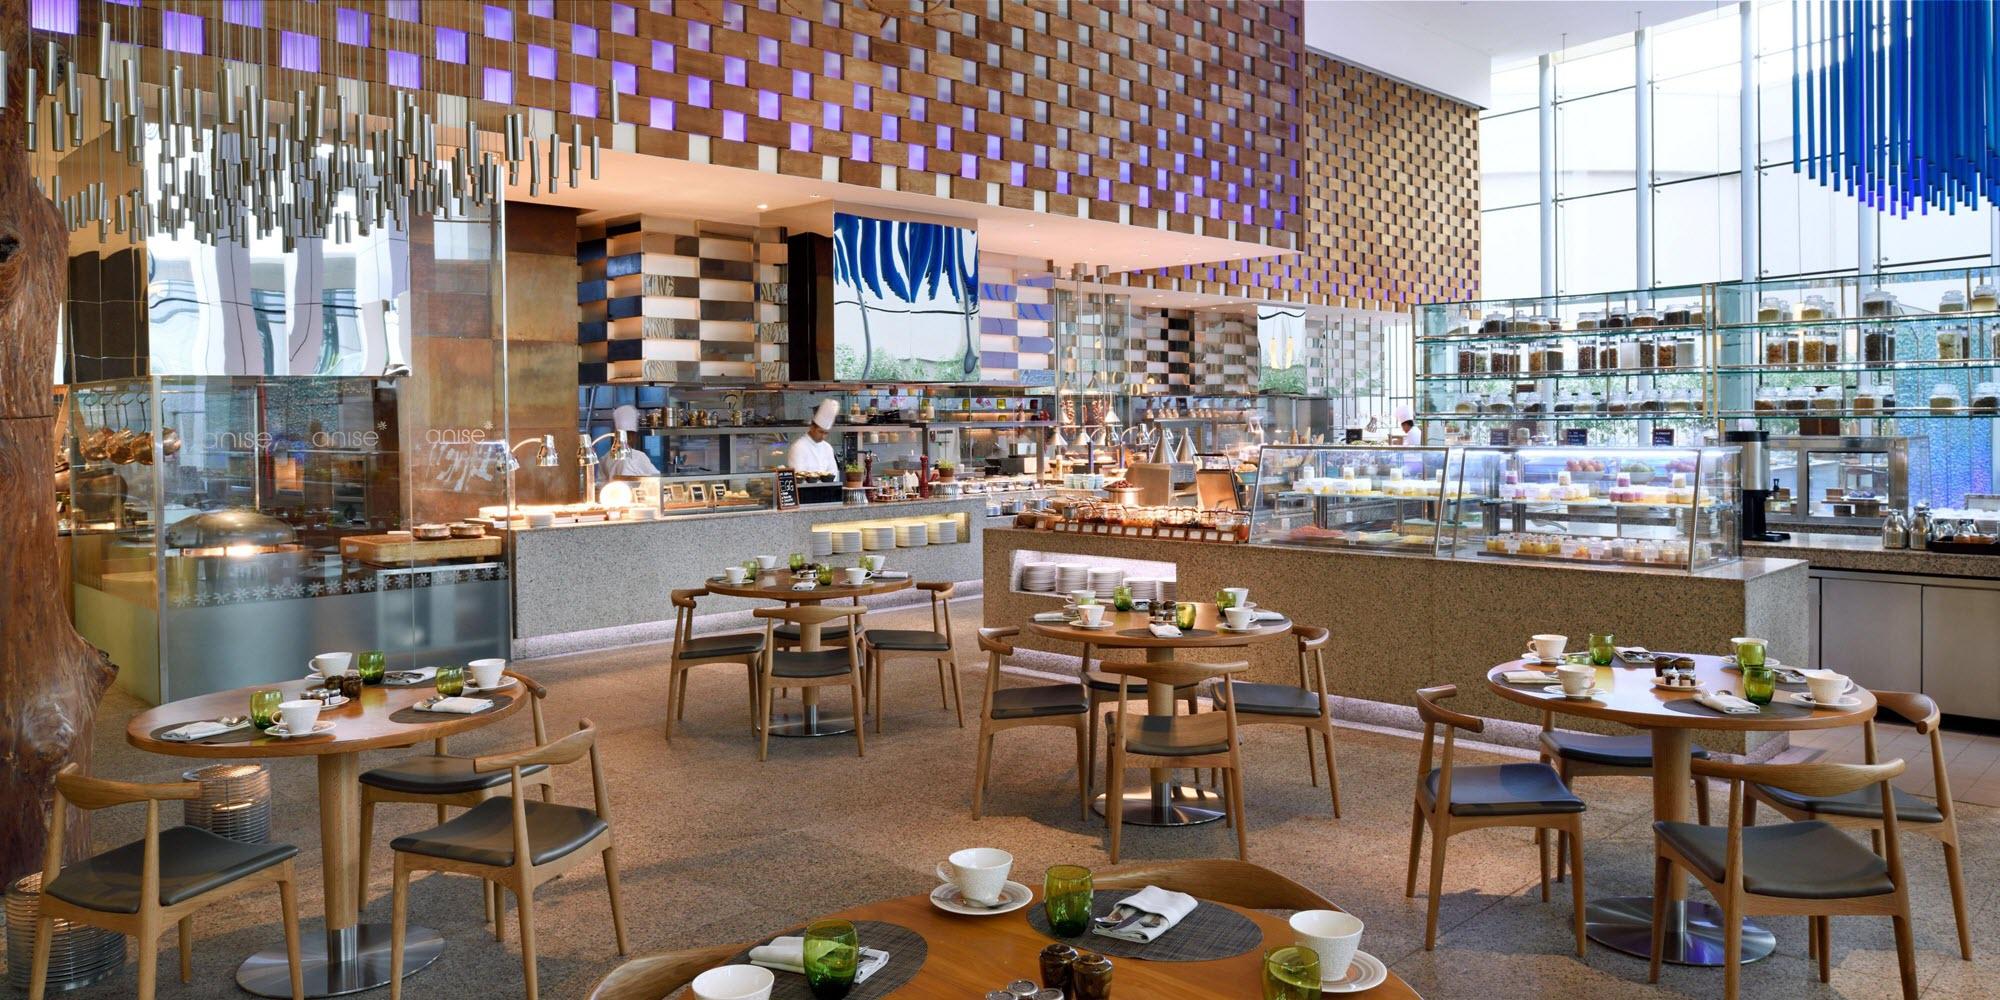  InterContinental Dubai Festival City Breakfast Restaurant